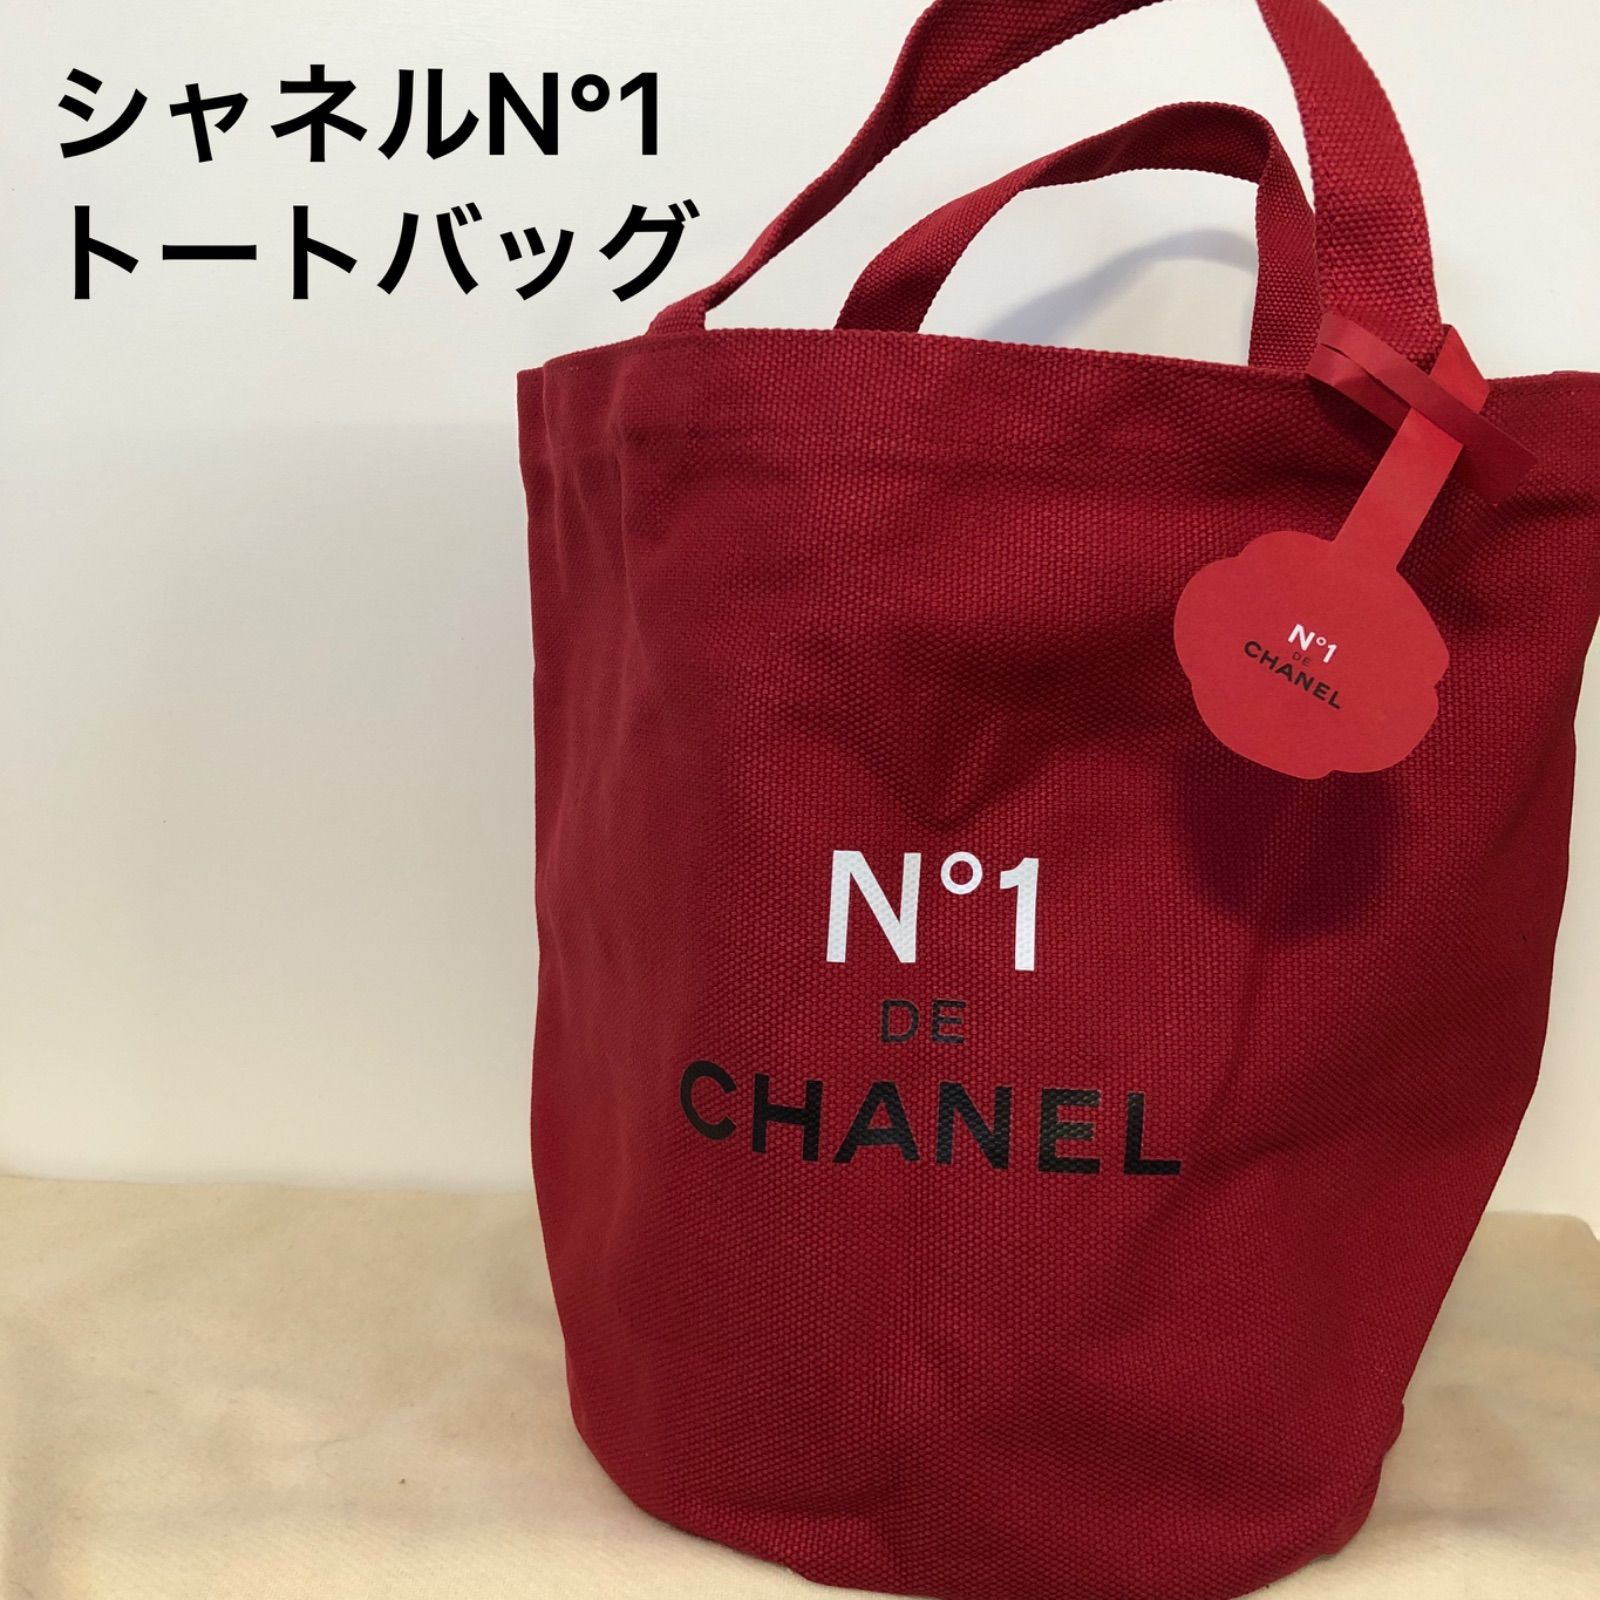 シャネル/N °1 DE CHANEL 赤色ノベルティバッグ - メルカリ